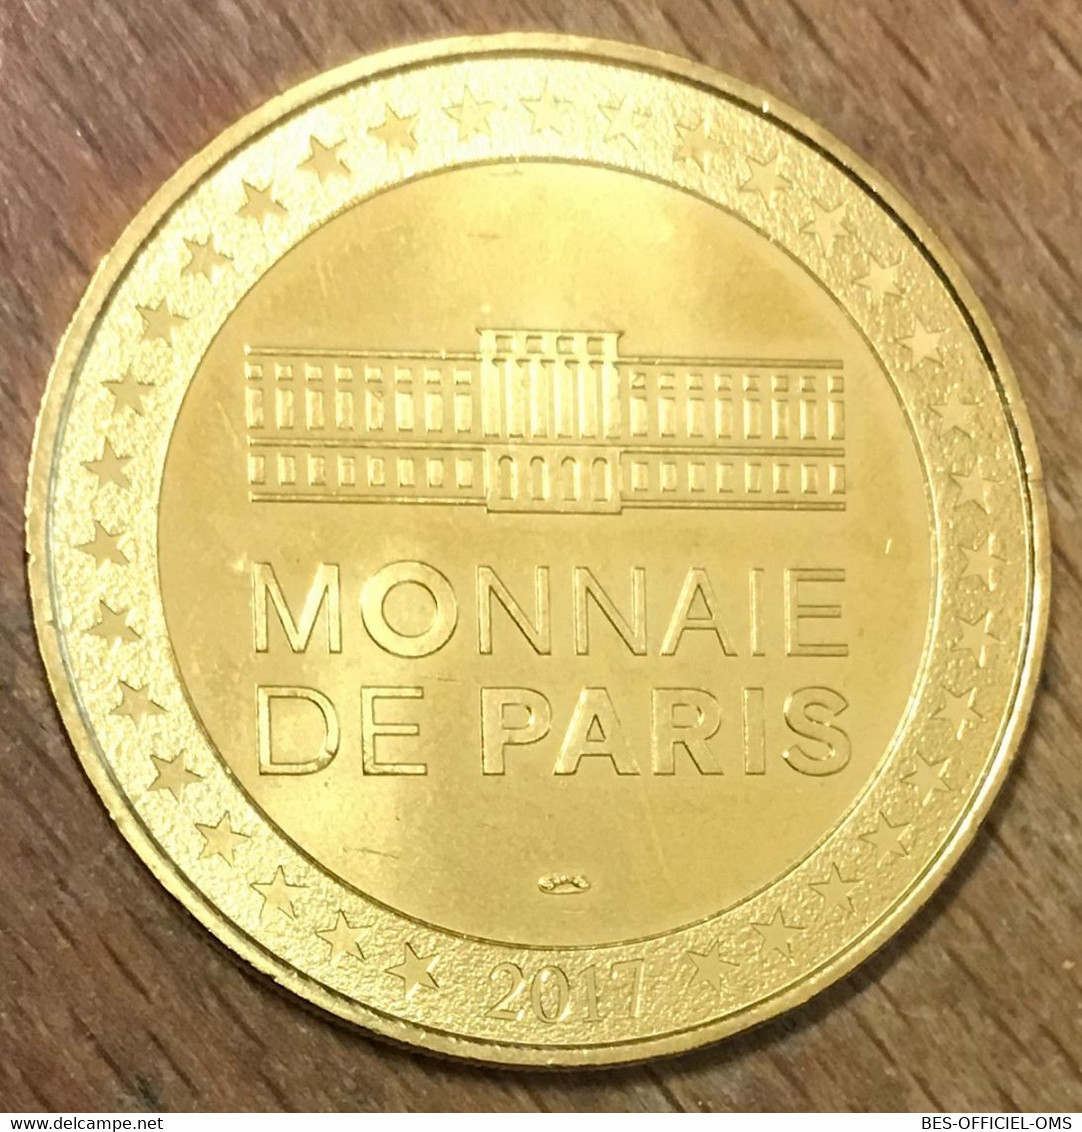 71 BASILIQUE DE PARAY-LE-MONIAL MDP 2017 MINI MÉDAILLE SOUVENIR MONNAIE DE PARIS JETON TOURISTIQUE MEDALS TOKENS COINS - 2017